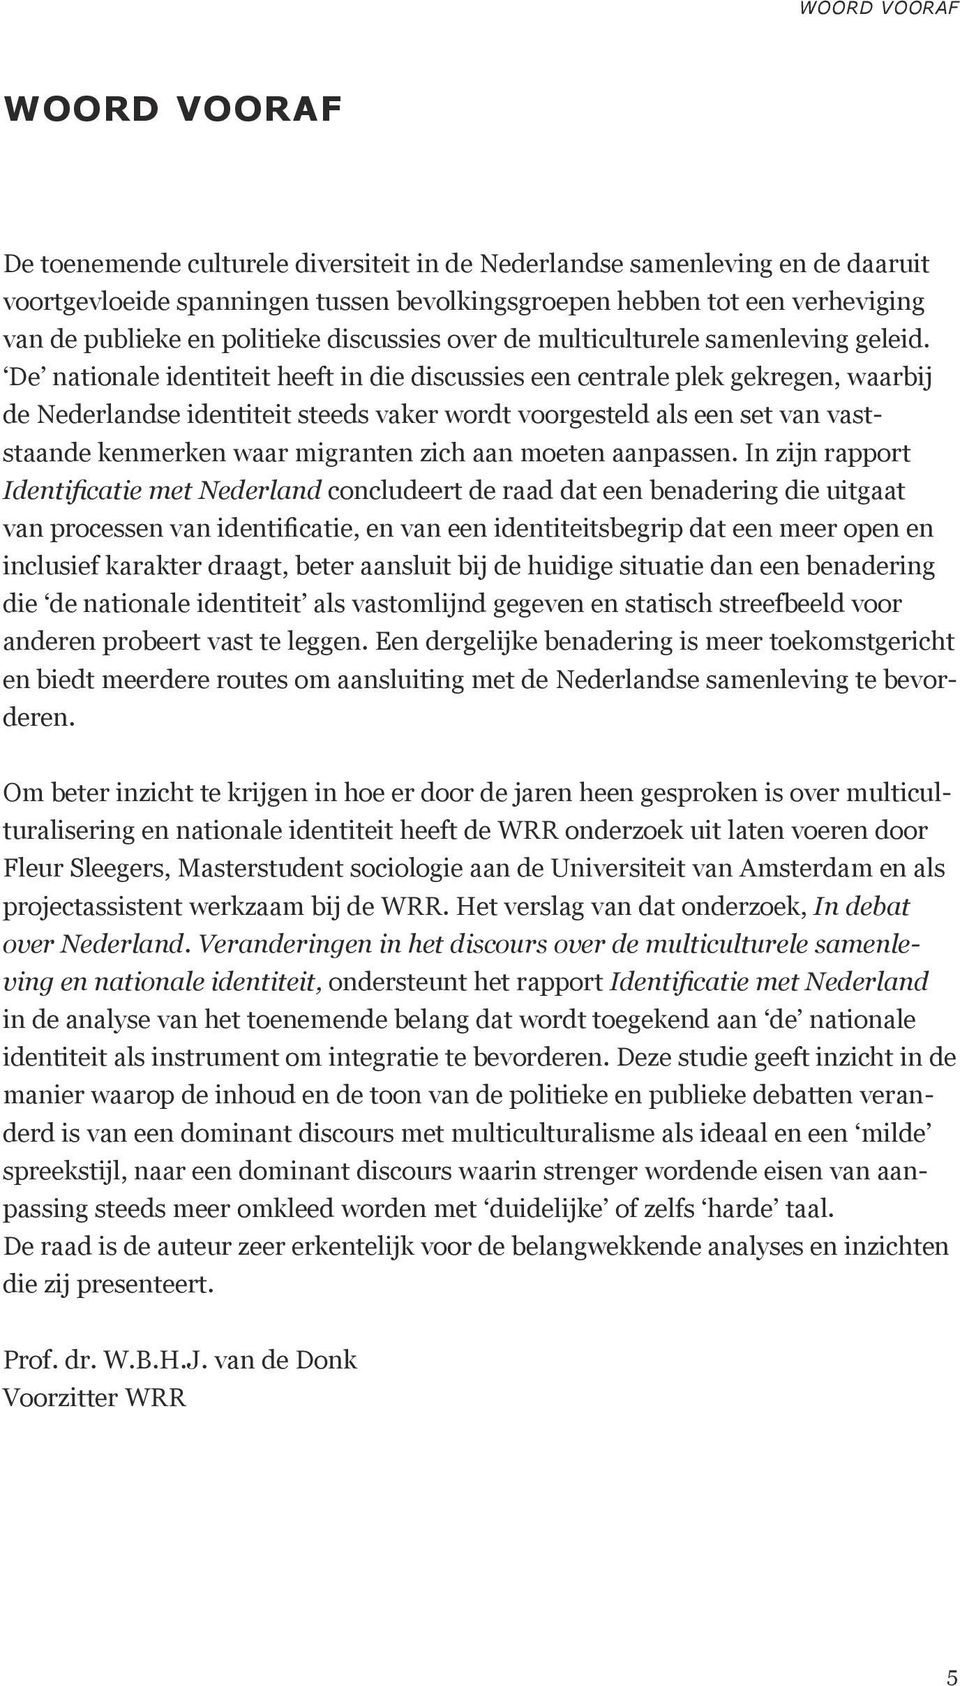 De nationale identiteit heeft in die discussies een centrale plek gekregen, waarbij de Nederlandse identiteit steeds vaker wordt voorgesteld als een set van vaststaande kenmerken waar migranten zich